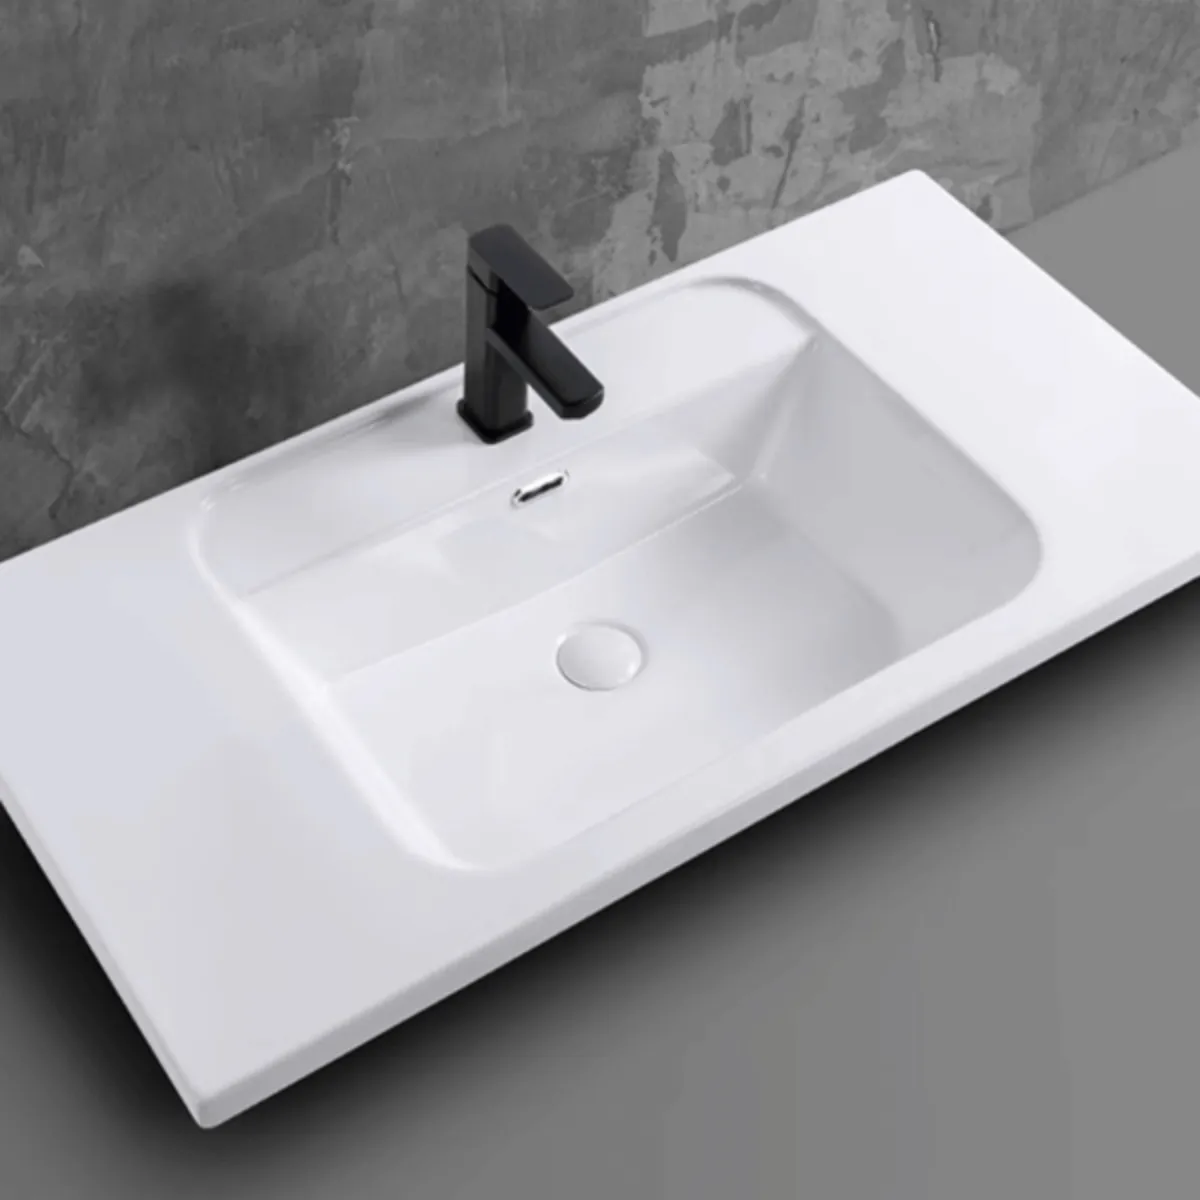 Sự hoàn hảo trong chi tiết: Chậu rửa lavabo âm bàn PLD-668B tạo điểm nhấn sang trọng cho phòng tắm bạn.